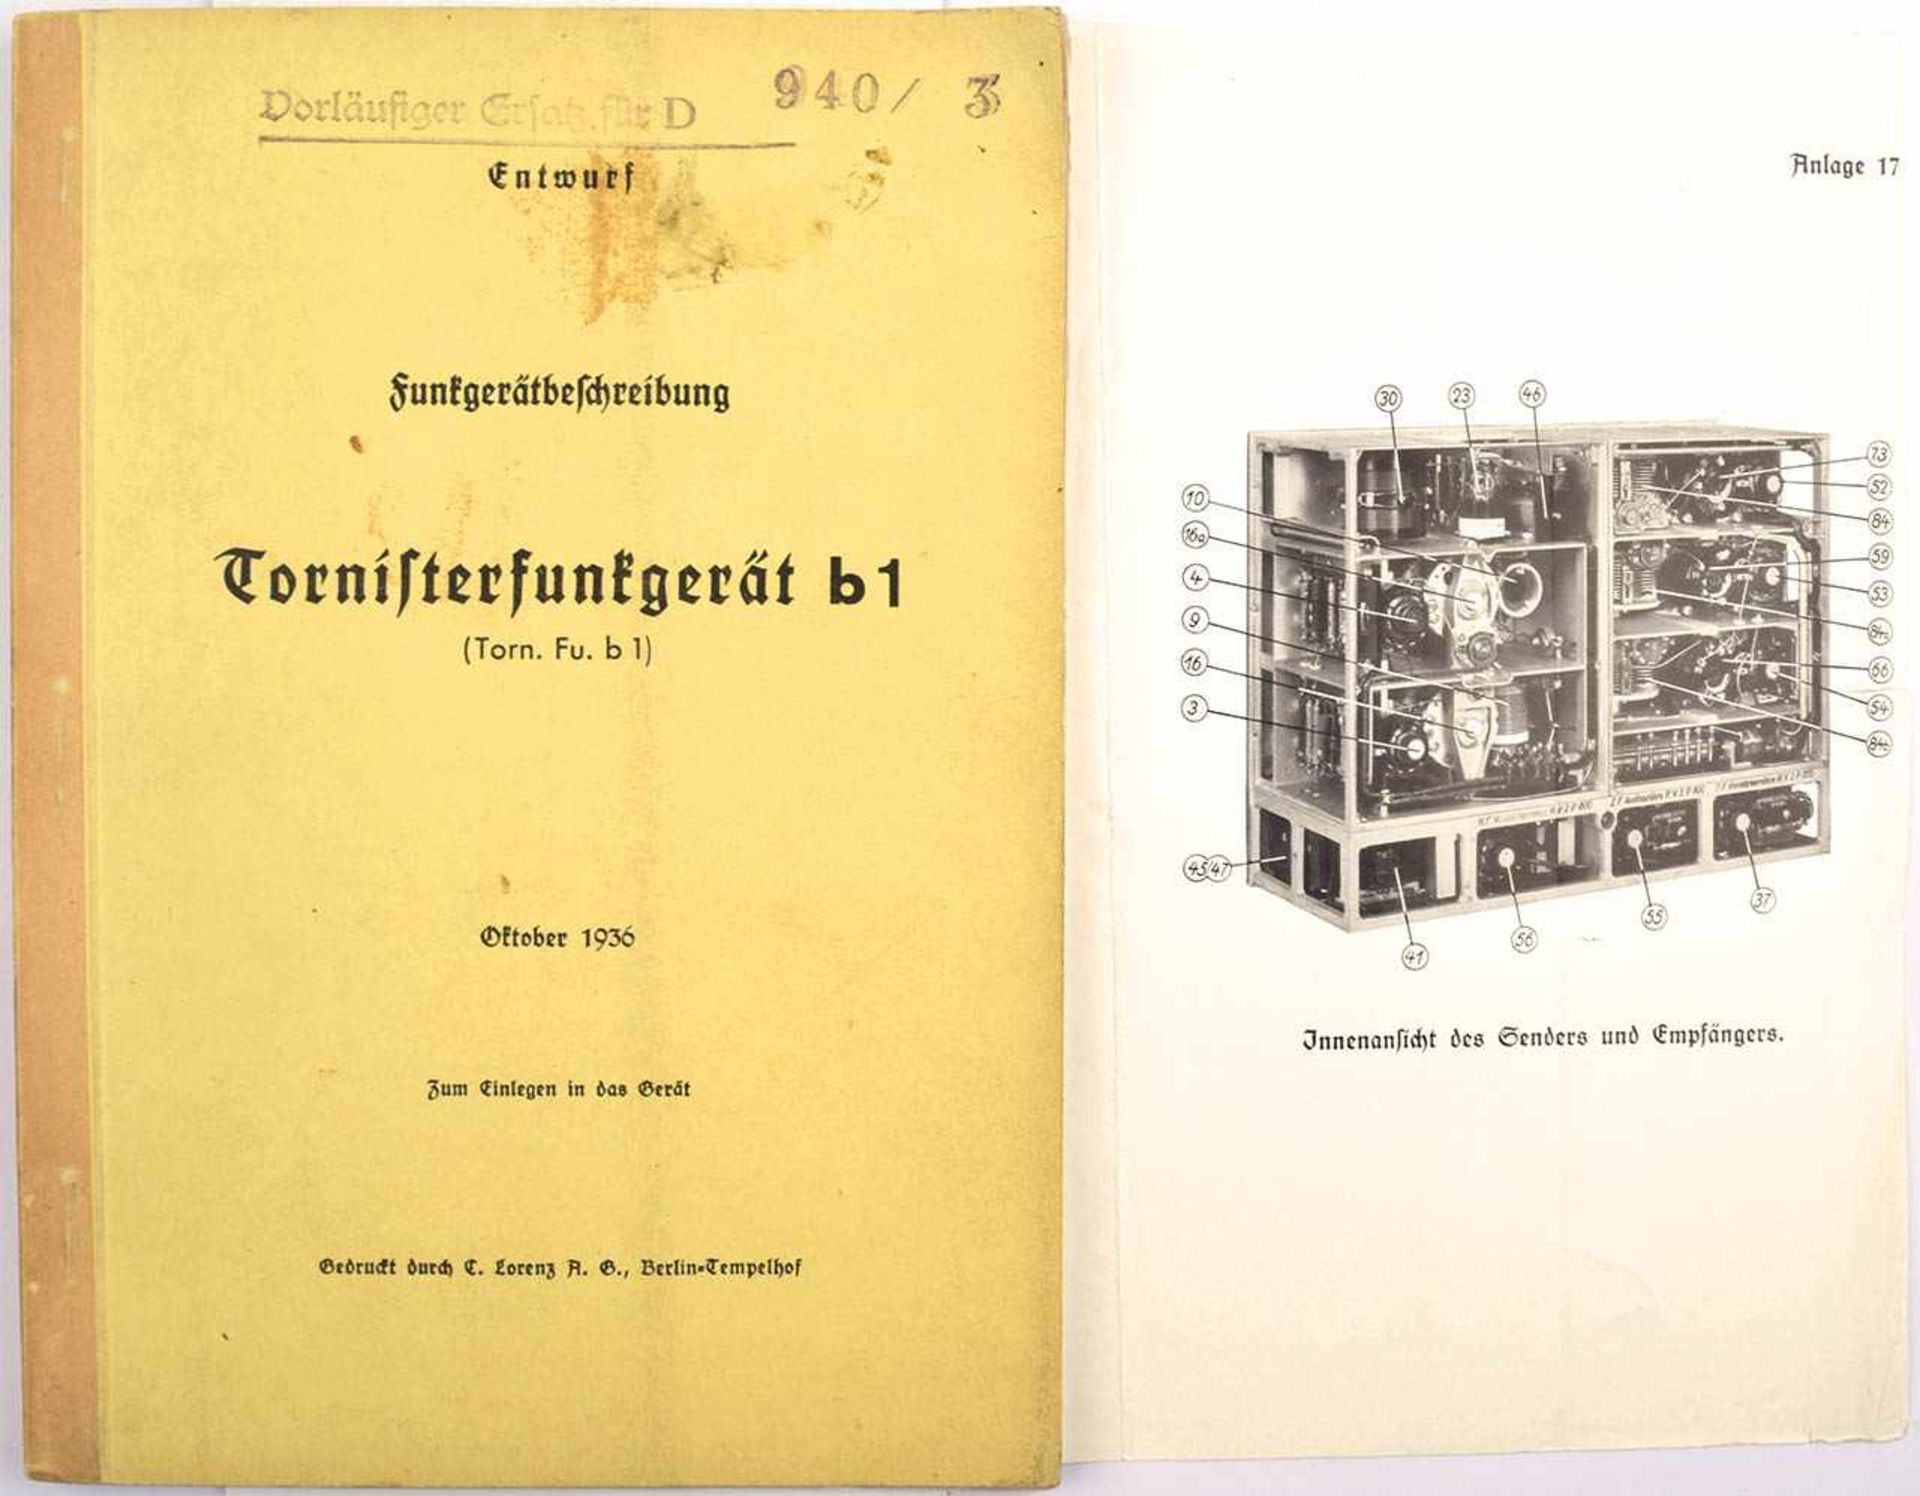 TORNISTERFUNKGERÄT B1, Entwurf Funkgerätbeschreibung, Bln. 1936, Fotos, Pläne, Anlagen, 36